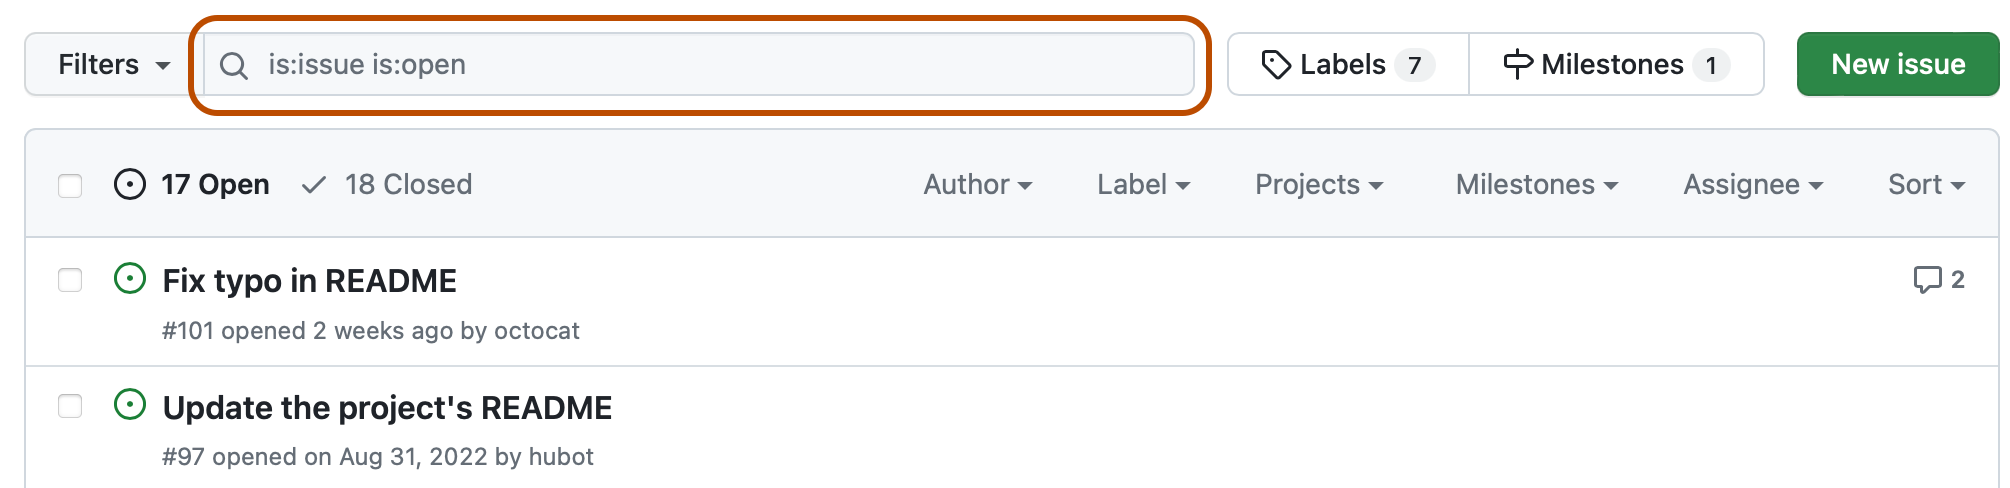 Captura de pantalla de la lista de problemas de un repositorio. Encima de la lista, un campo de búsqueda, que contiene la consulta "is:issue is:open", resaltado en naranja oscuro.